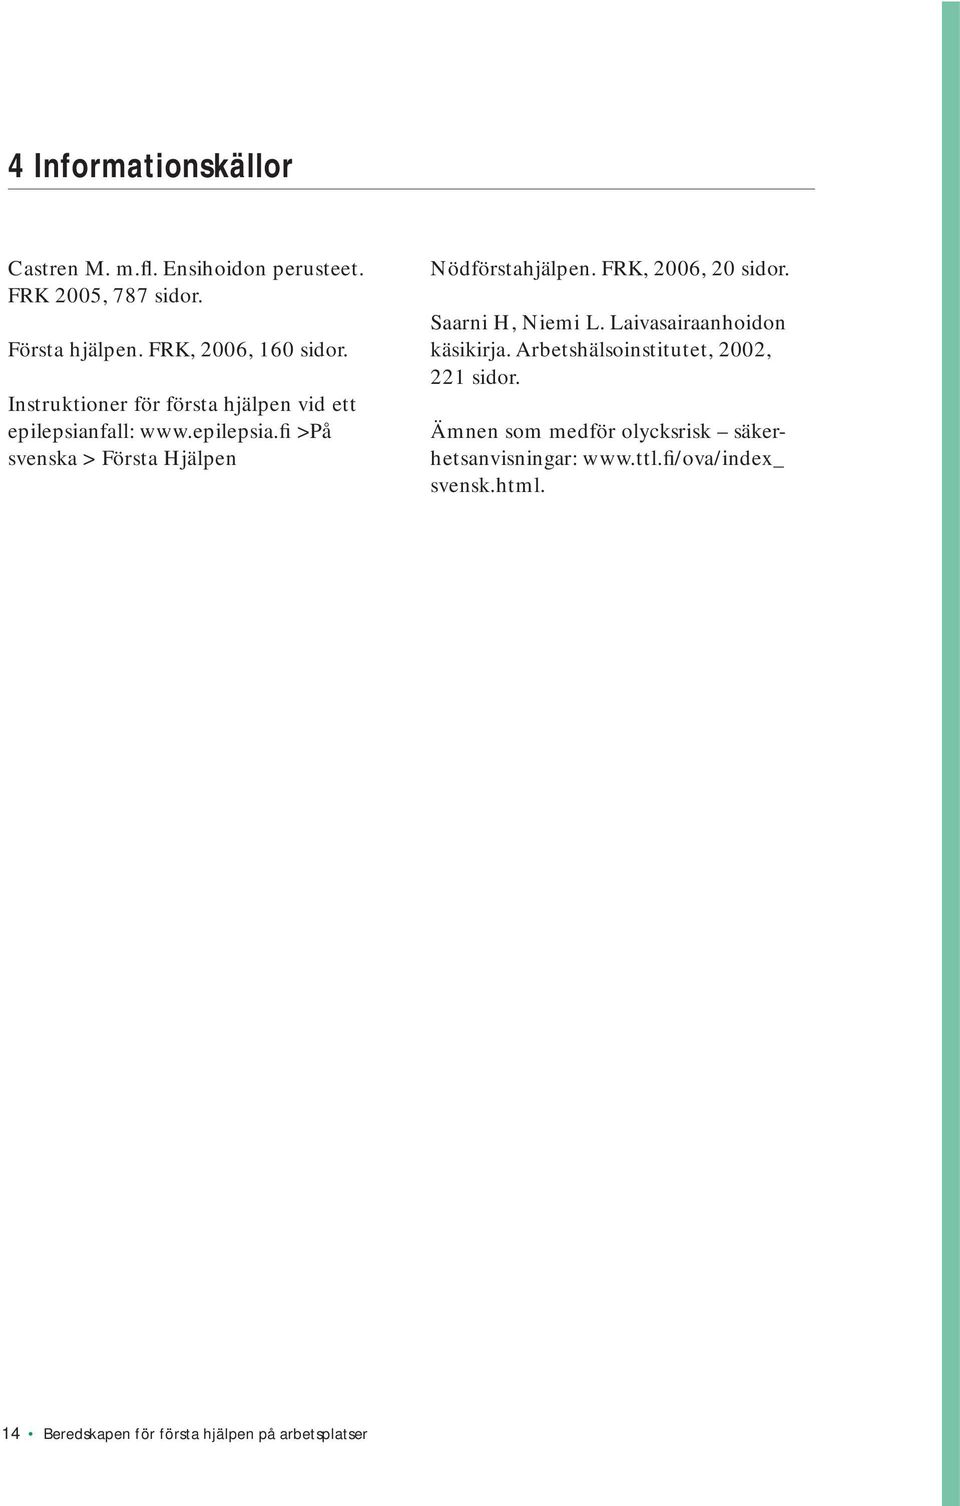 FRK, 2006, 20 sidor. Saarni H, Niemi L. Laivasairaanhoidon käsikirja. Arbetshälsoinstitutet, 2002, 221 sidor.